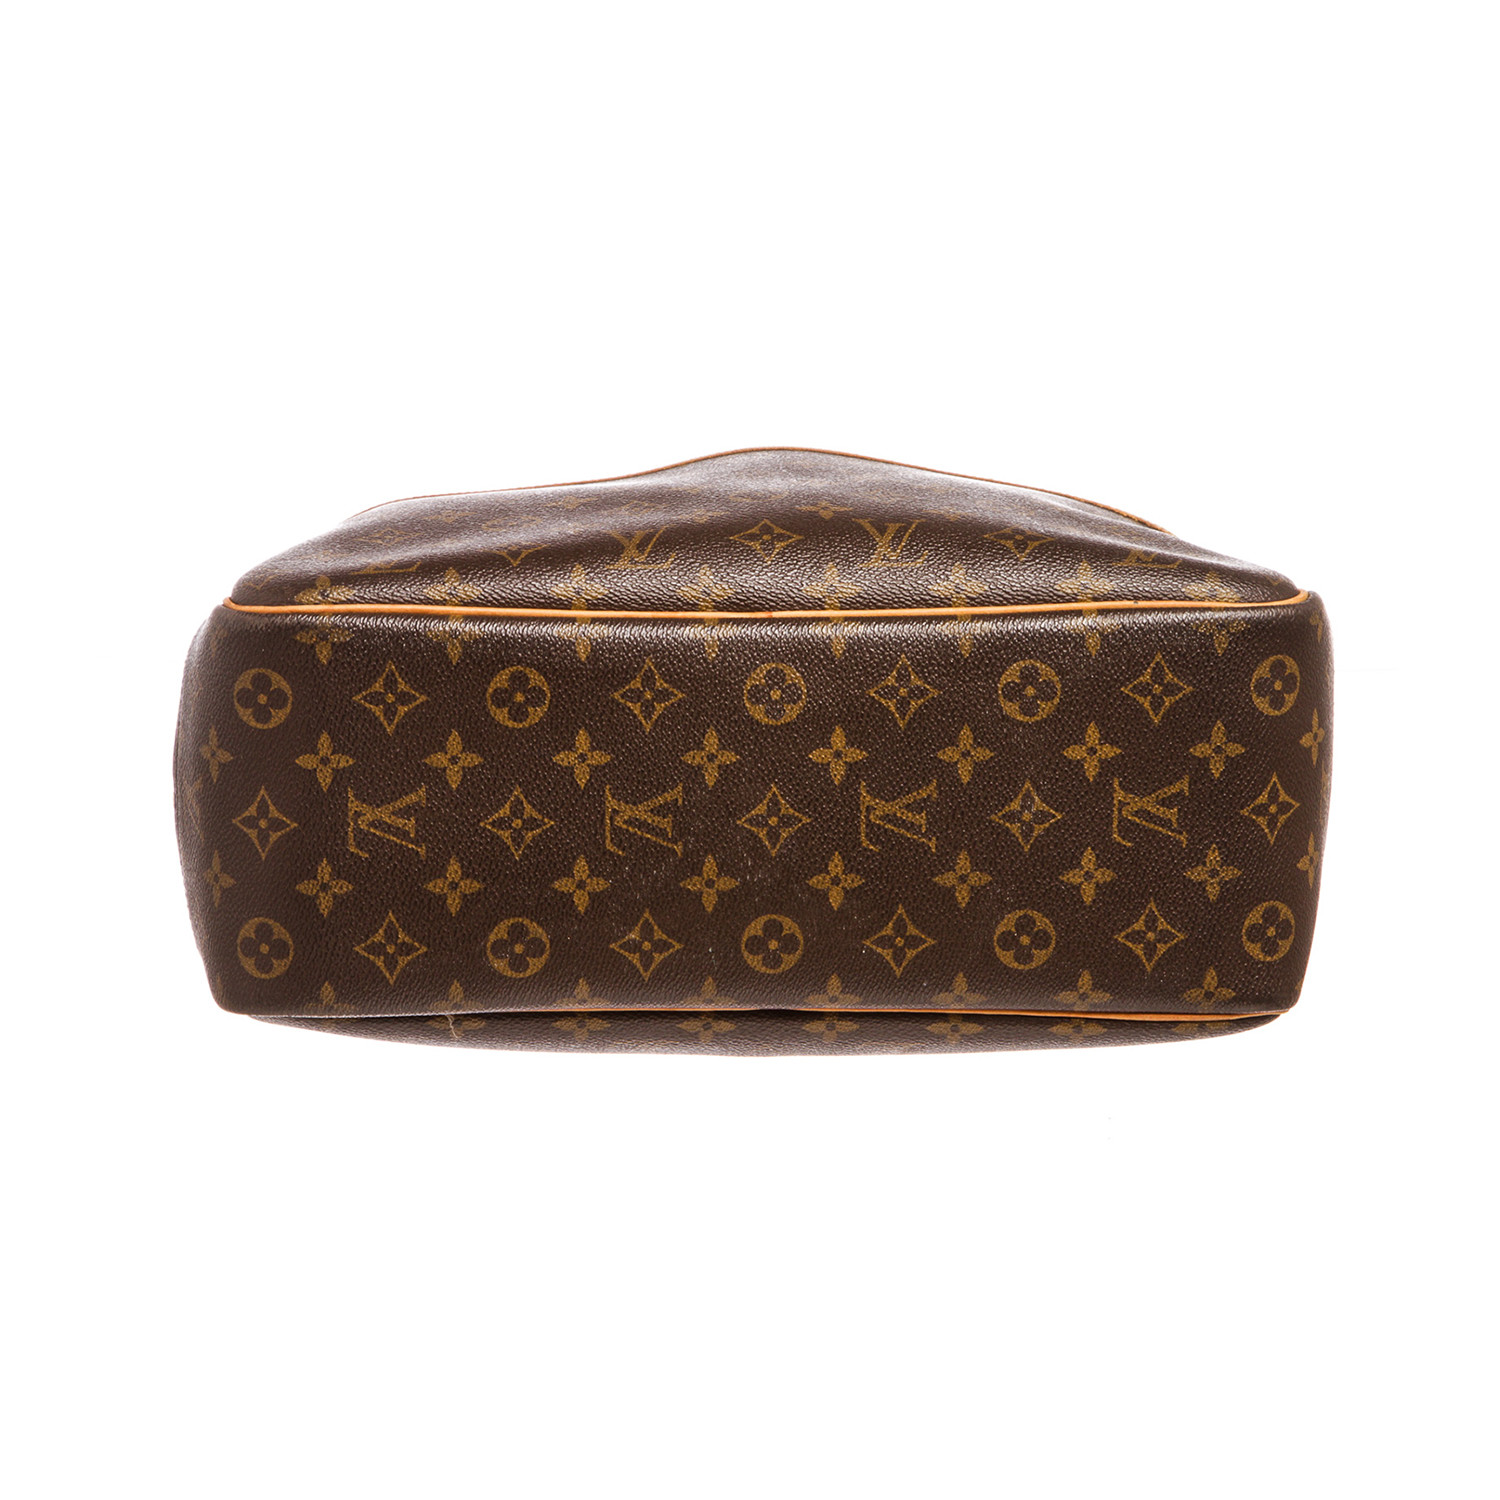 Louis Vuitton // Monogram Canvas Leather Deauville Doctor Bag // Pre-Owned - Louis Vuitton ...